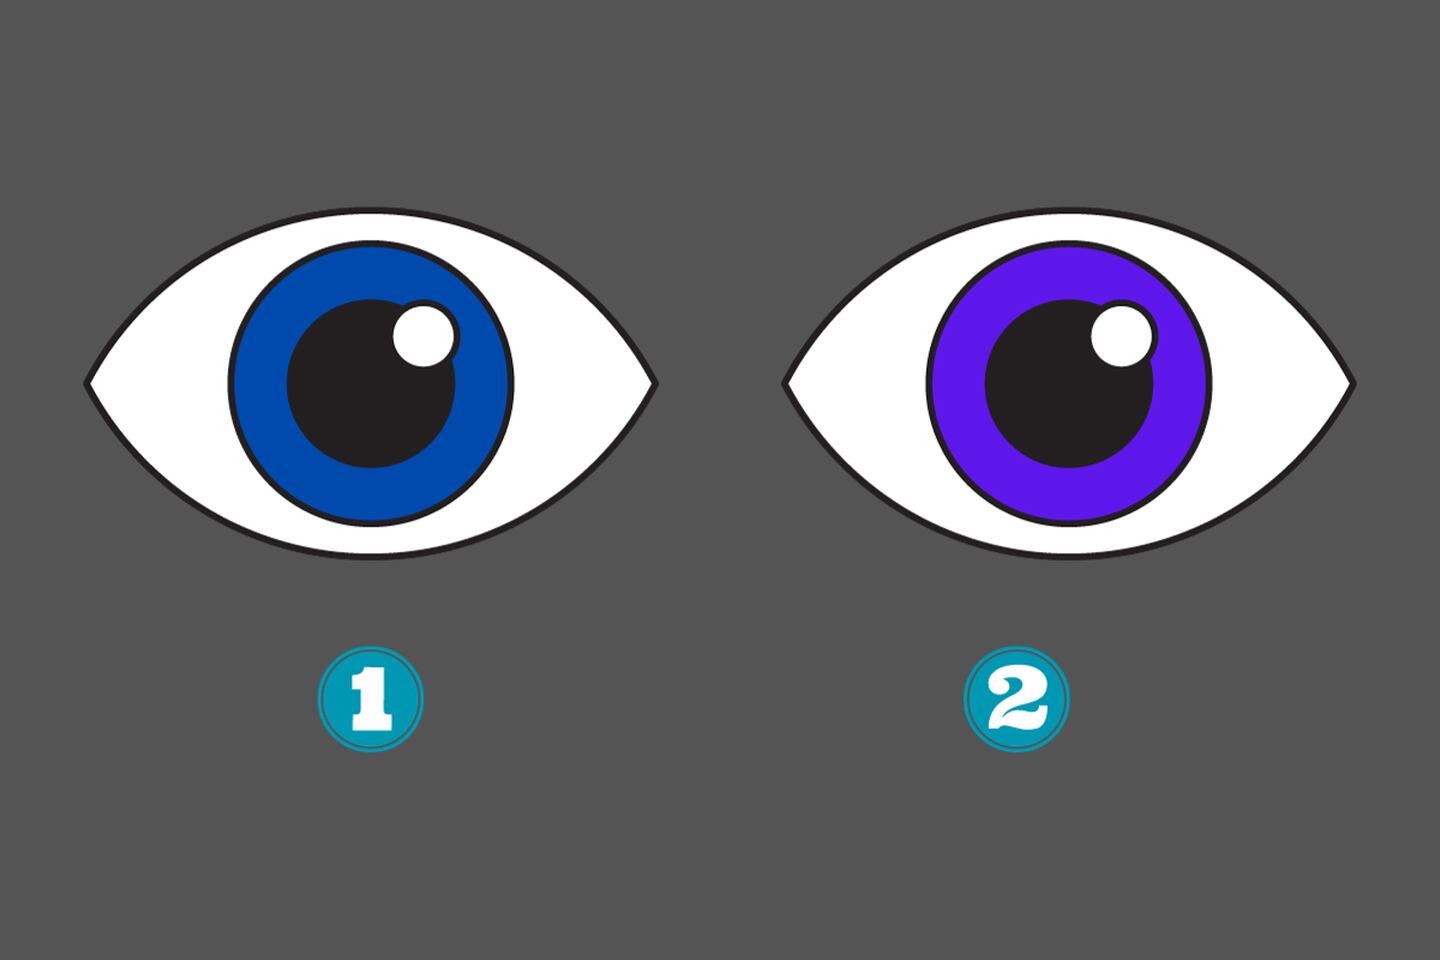 En este test de personalidad hay dos ojos: el primero azul; y el segundo morado.